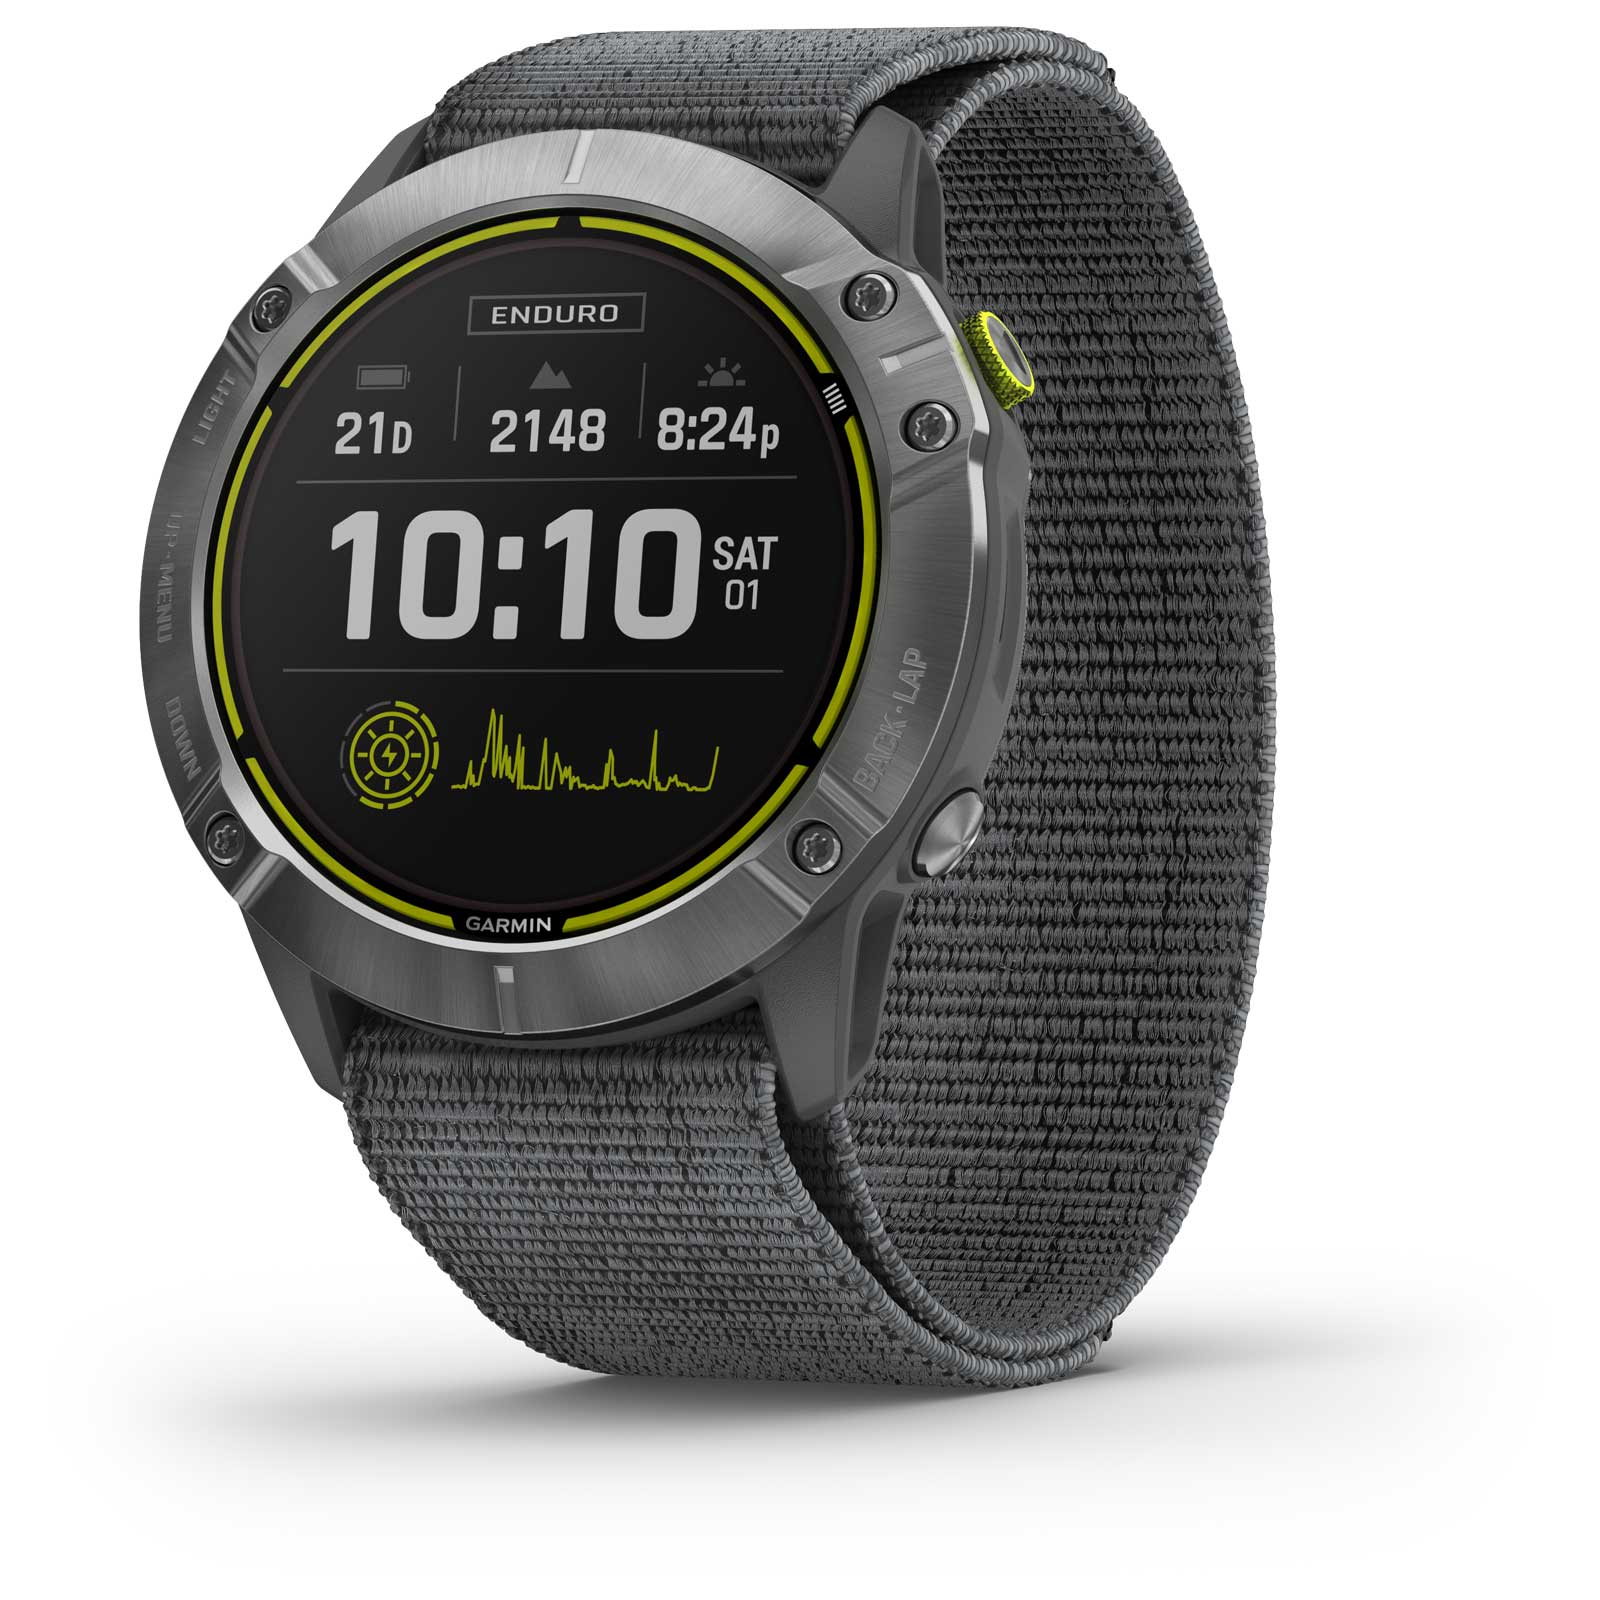 Produktbild von Garmin Enduro GPS Multisport Smartwatch - Grau/Silber Stahl